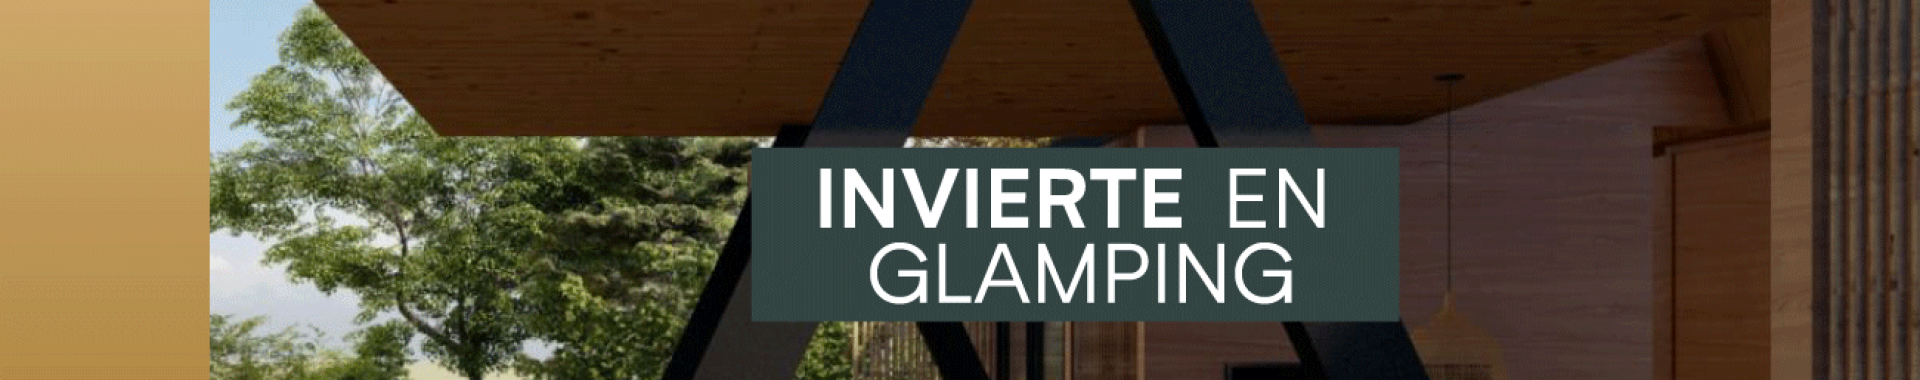 ¿Por qué invertir en glamping?